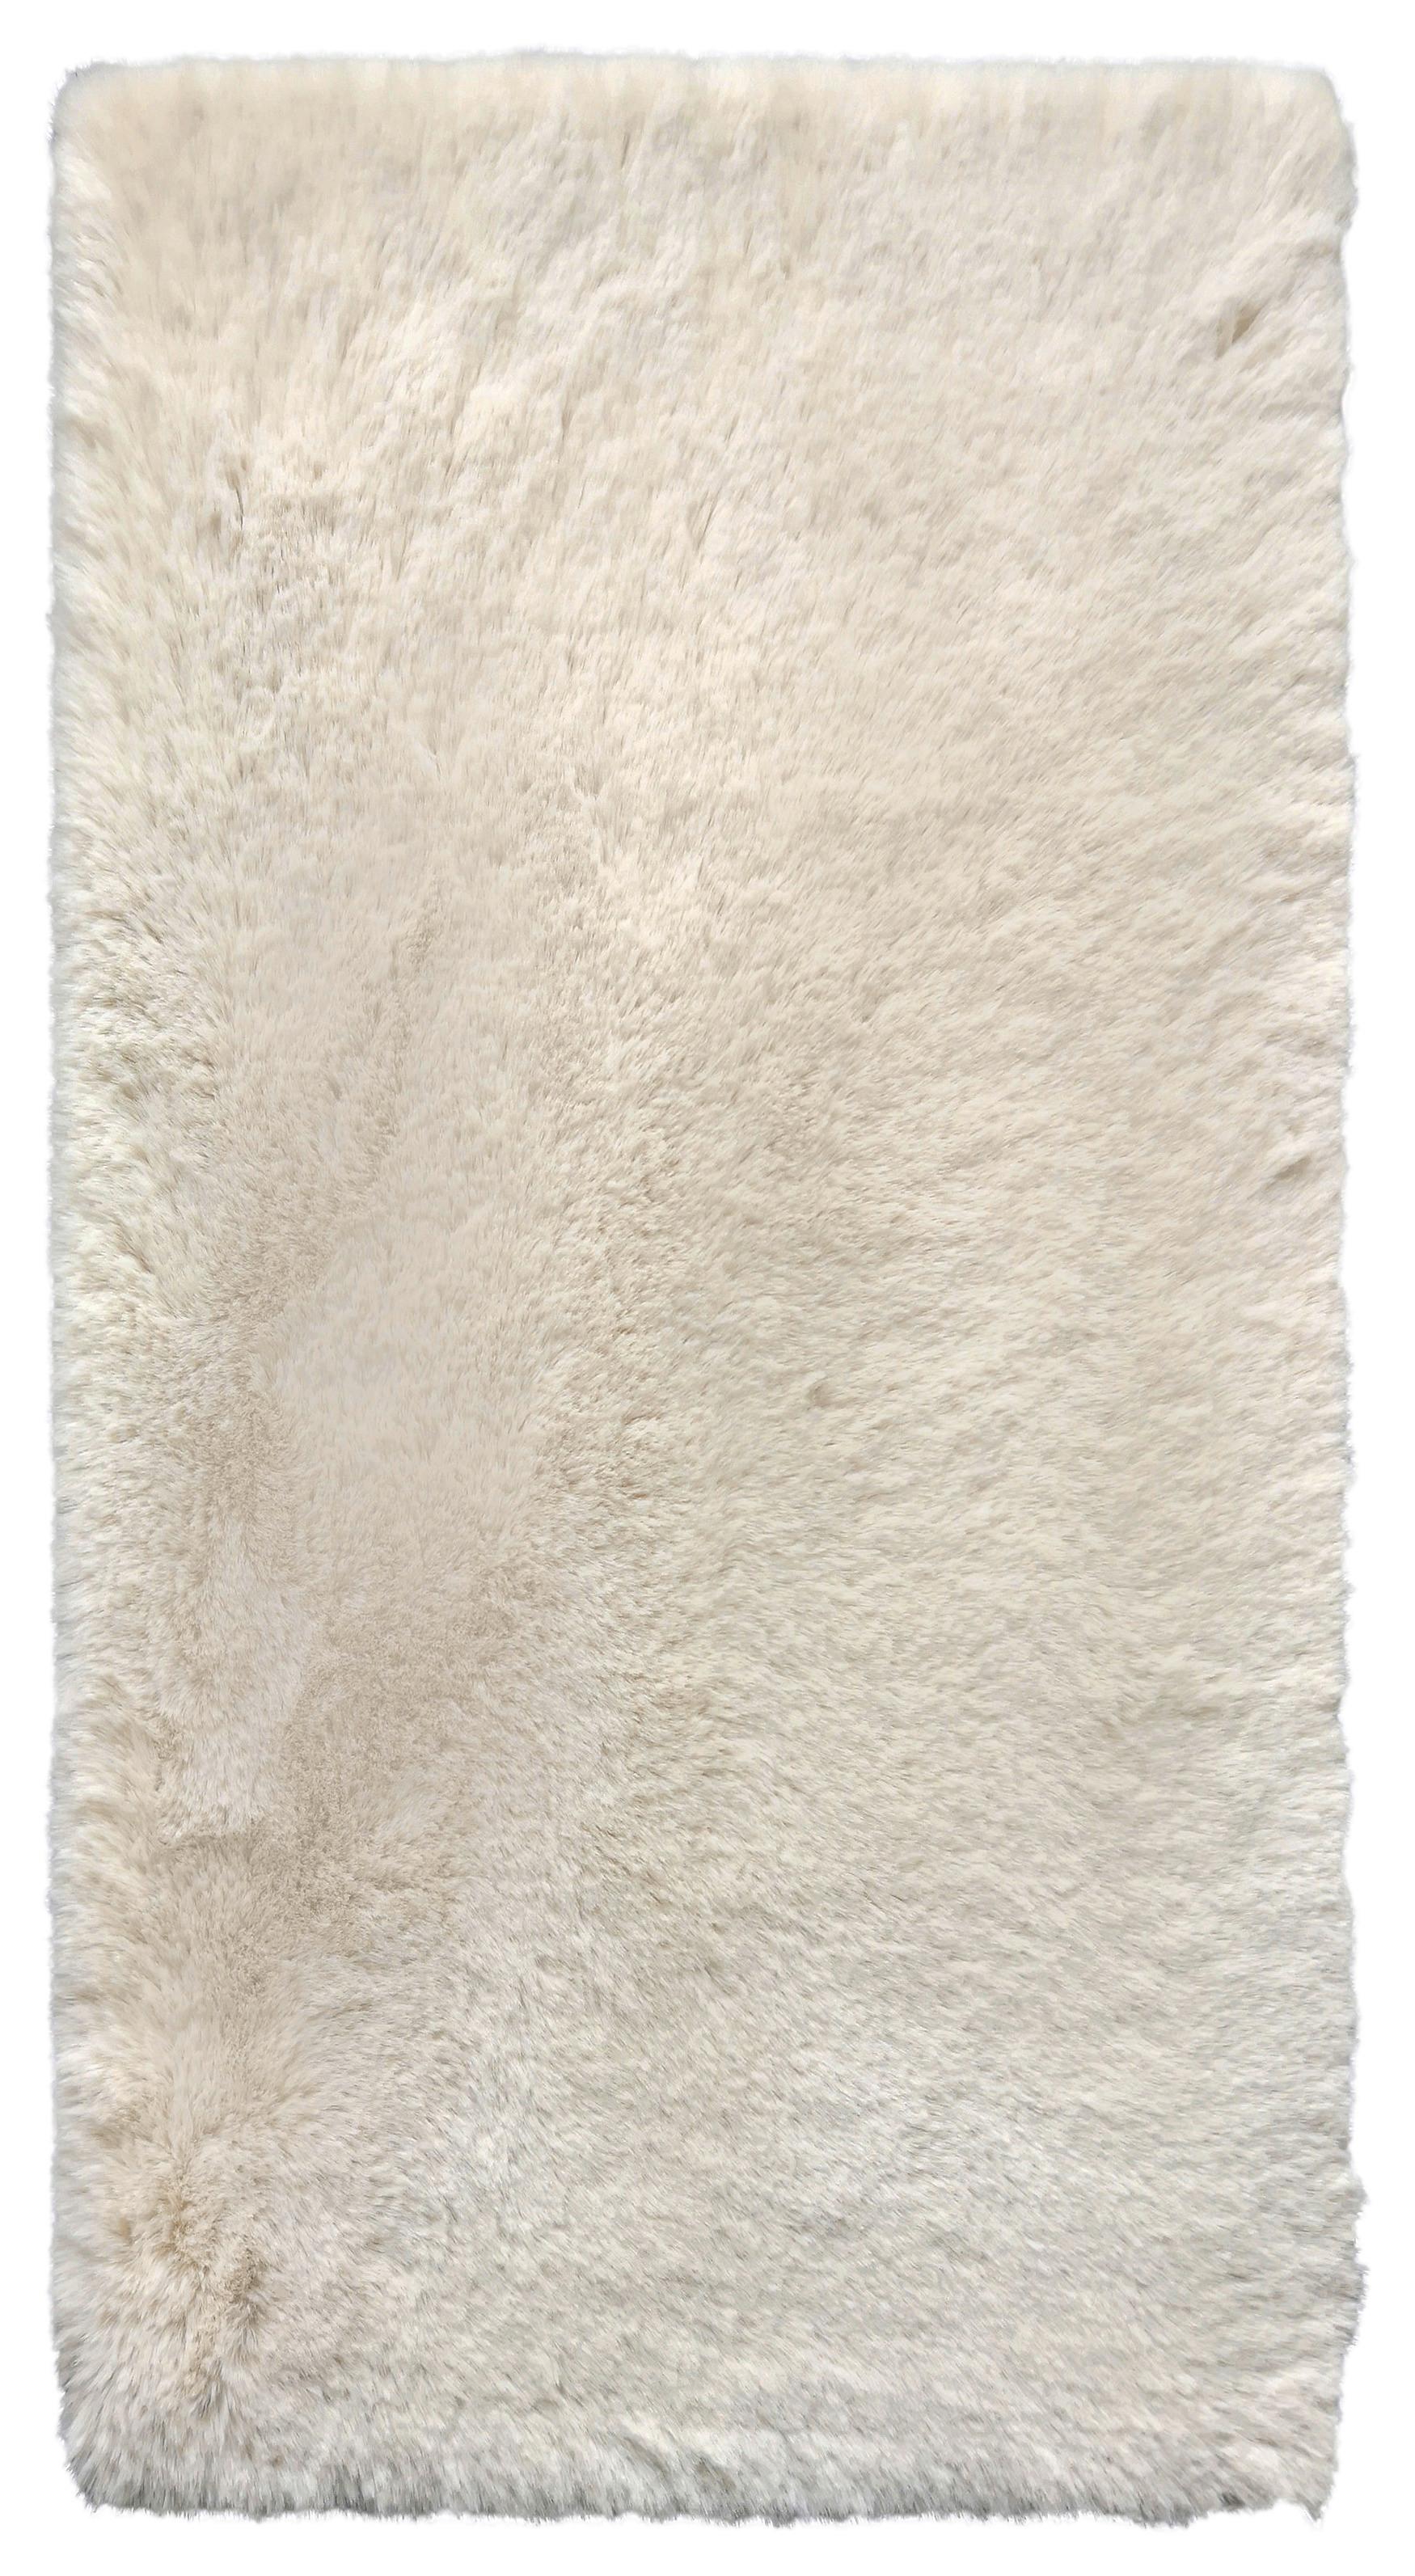 Umelá Kožušina Caroline 1, 80/150cm, Béžová - béžová, textil (80/150cm) - Modern Living